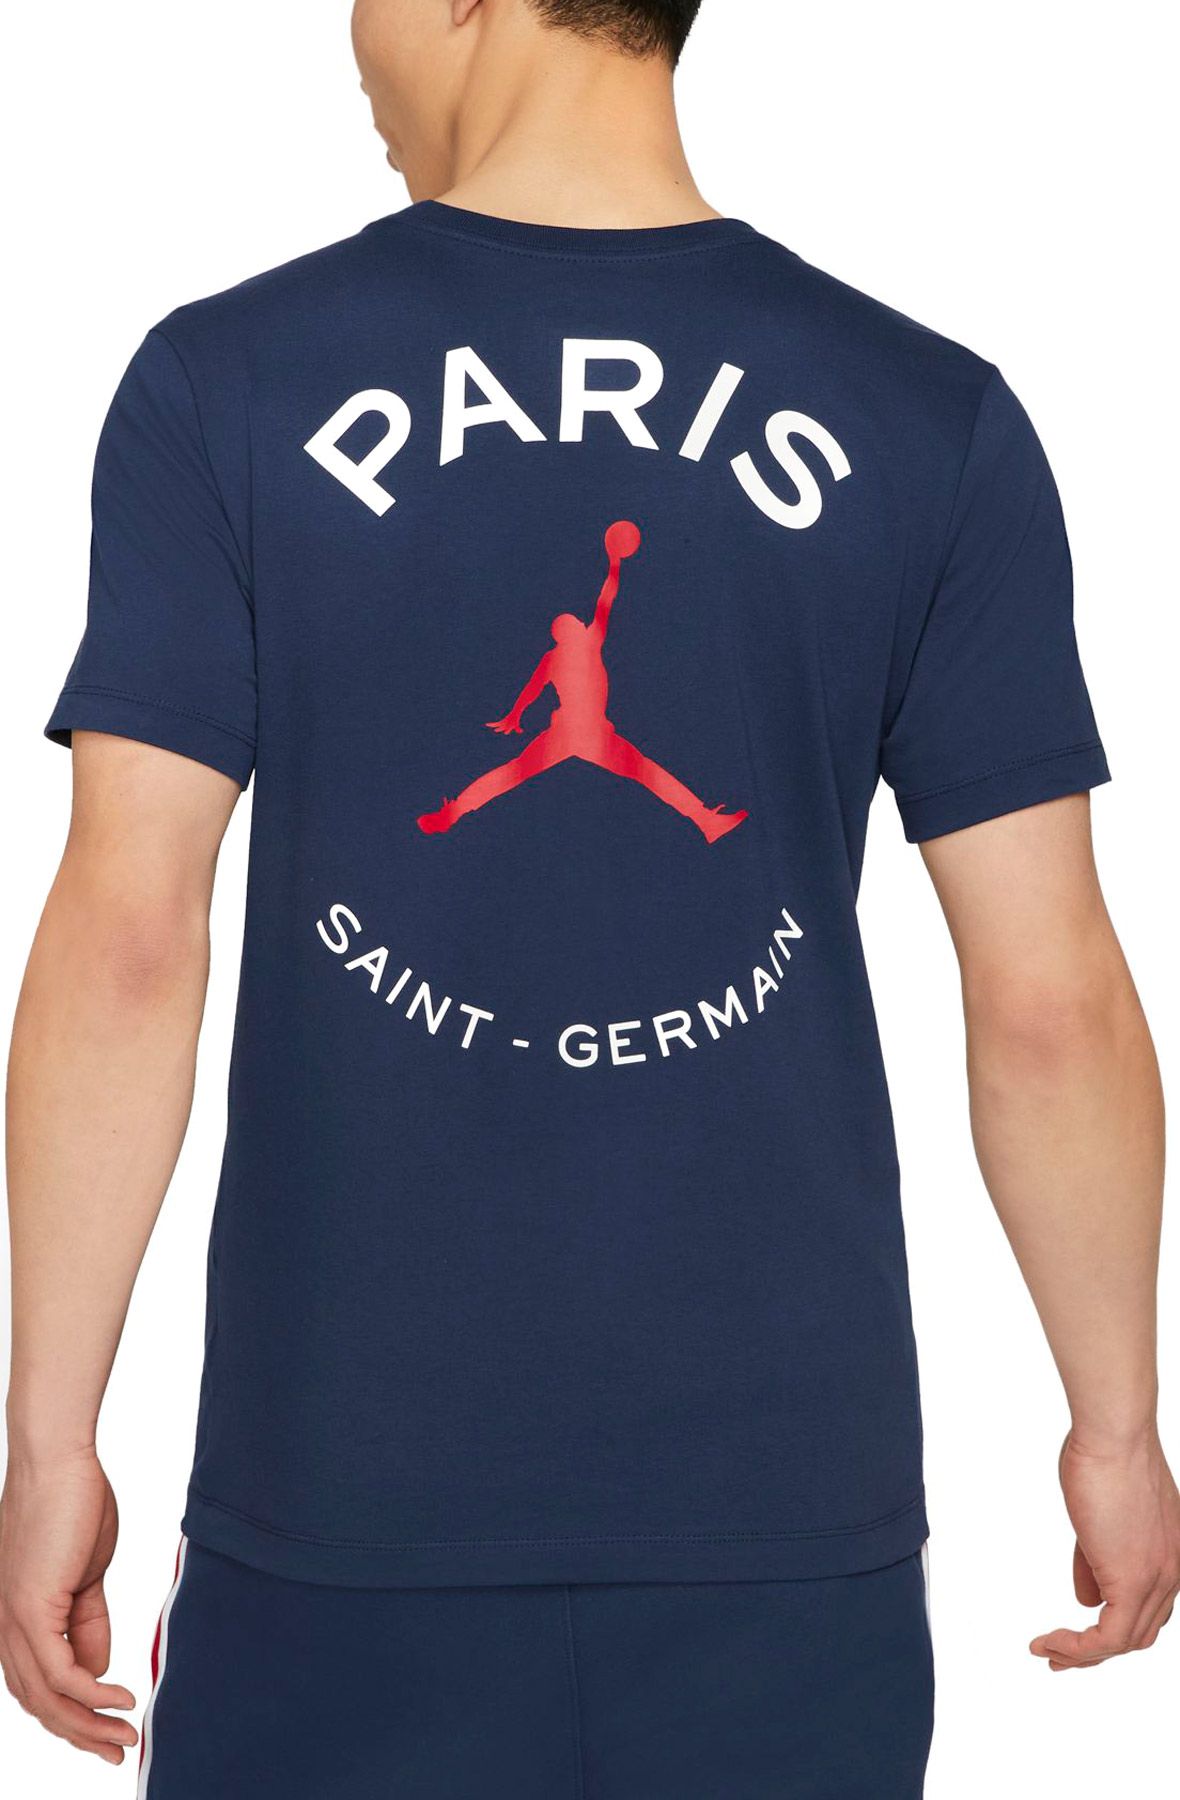 PARIS SAINT-GERMAIN Gourde PSG - Collection officielle 410 ml